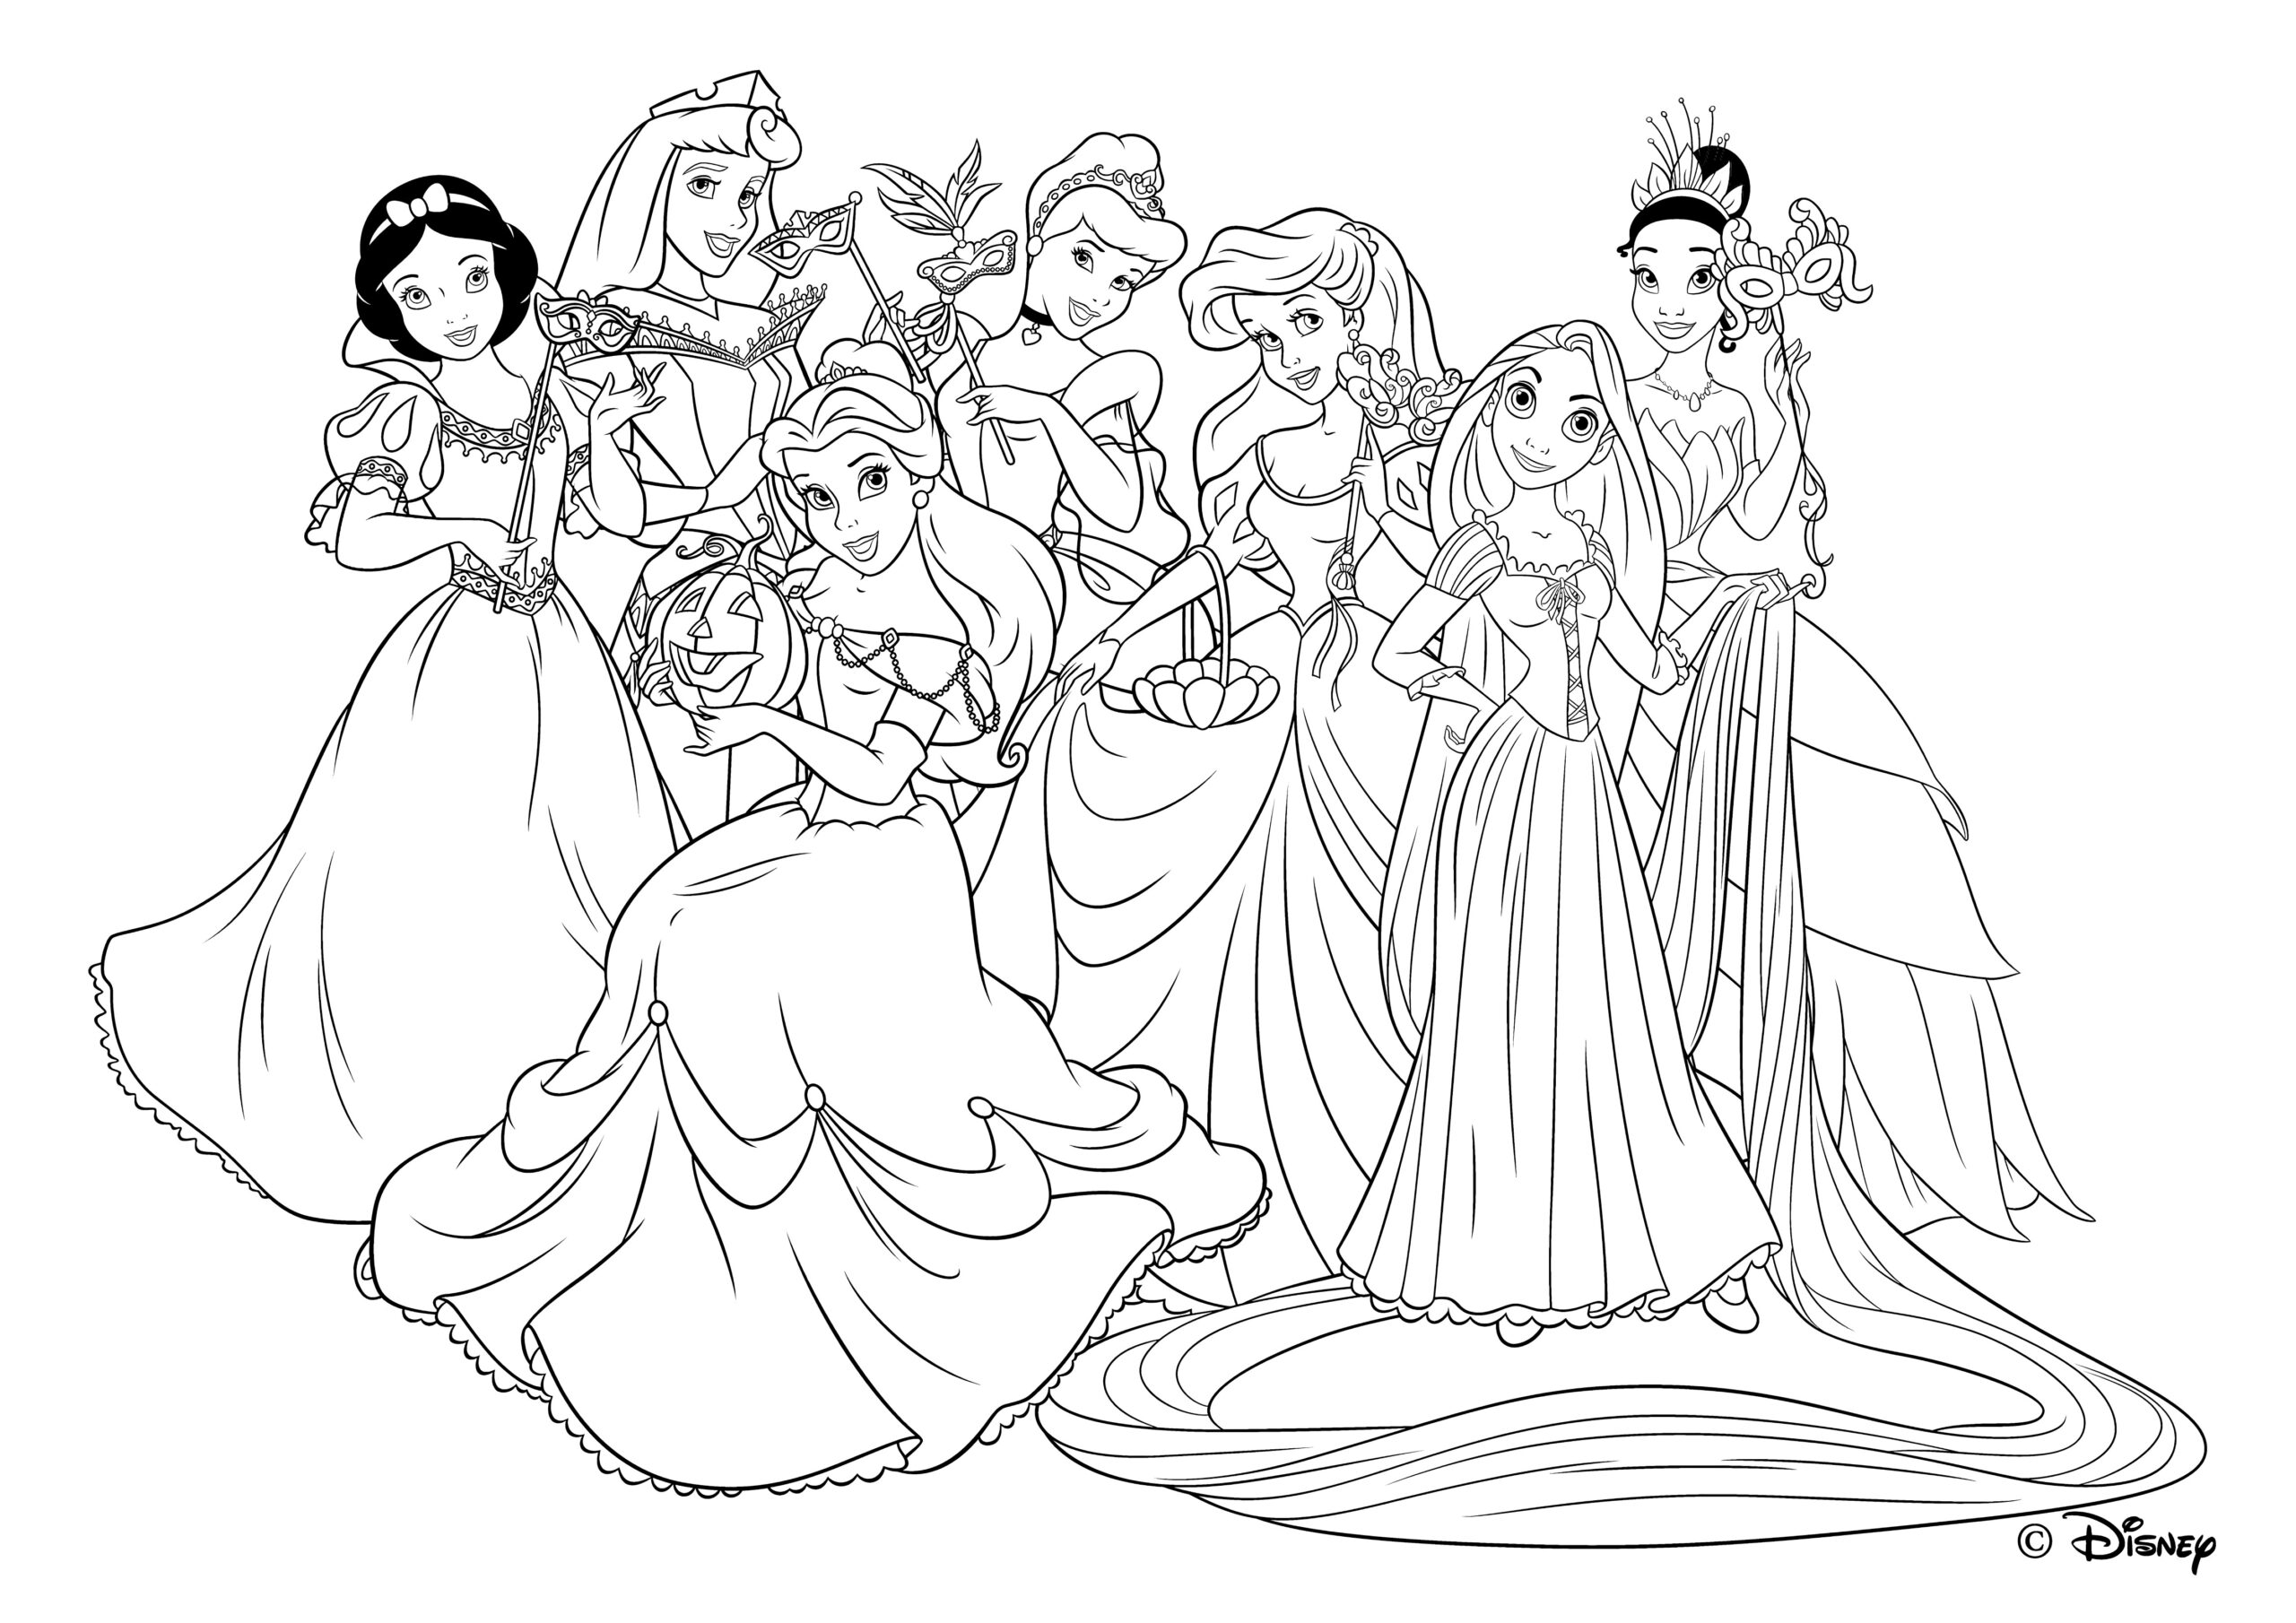 60 Desenhos De Princesas Para Imprimir E Colorir